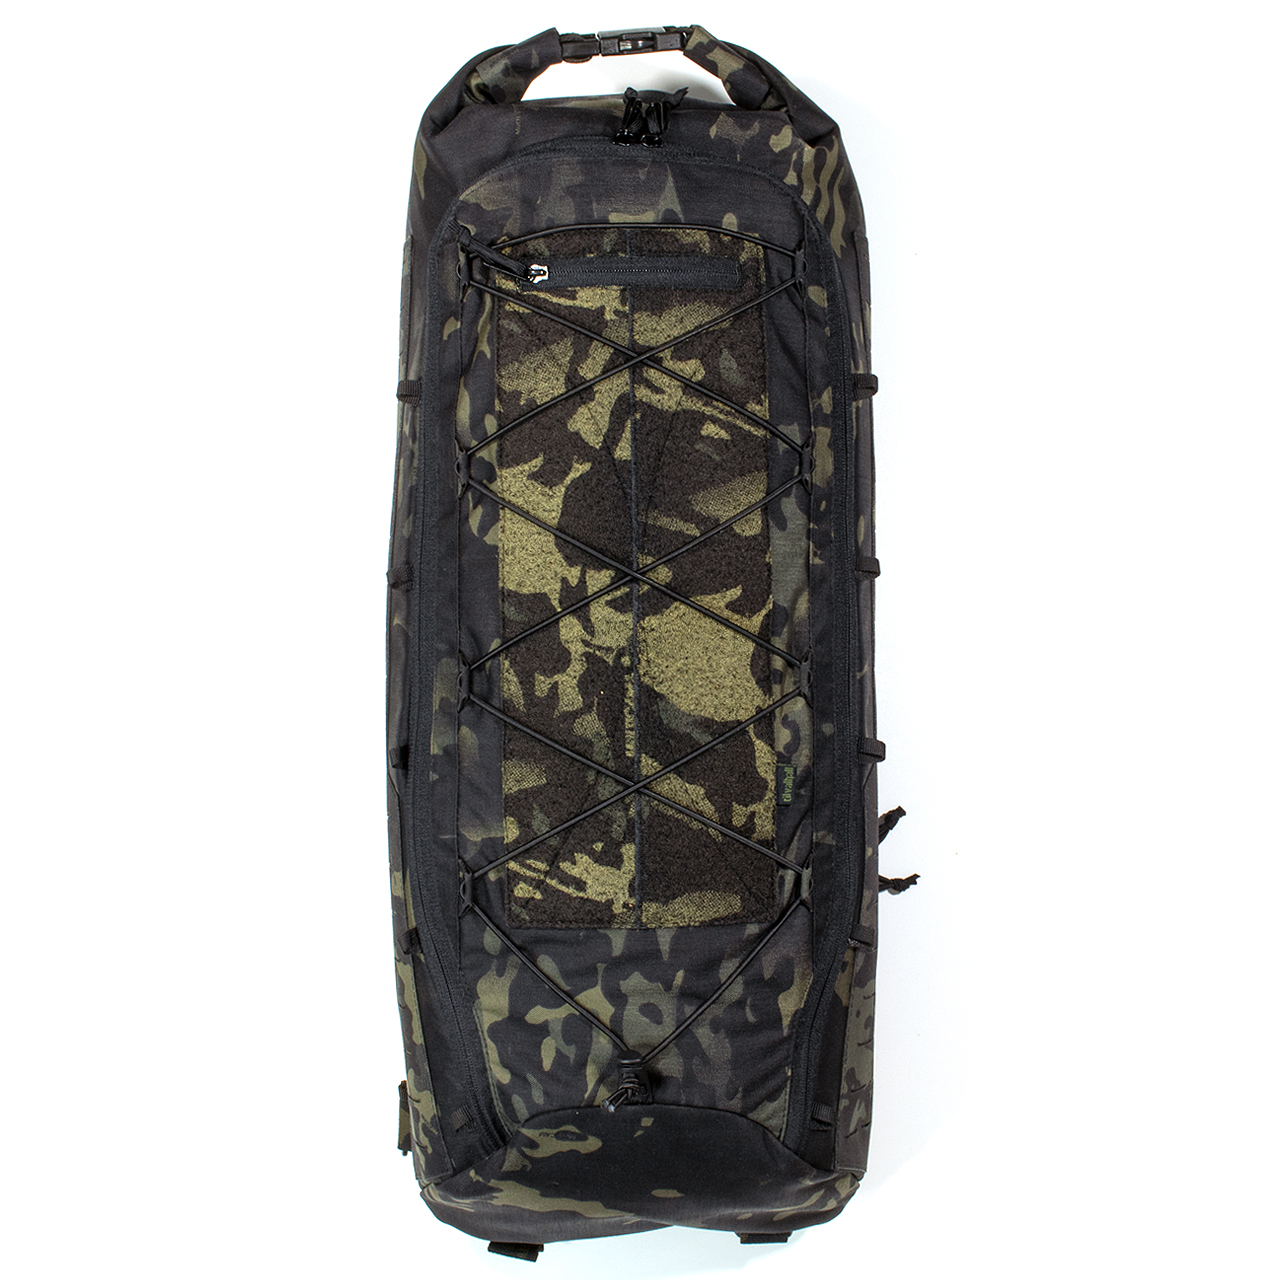 Sling-Back-Bag "SKULDER BAG", Multicam® black